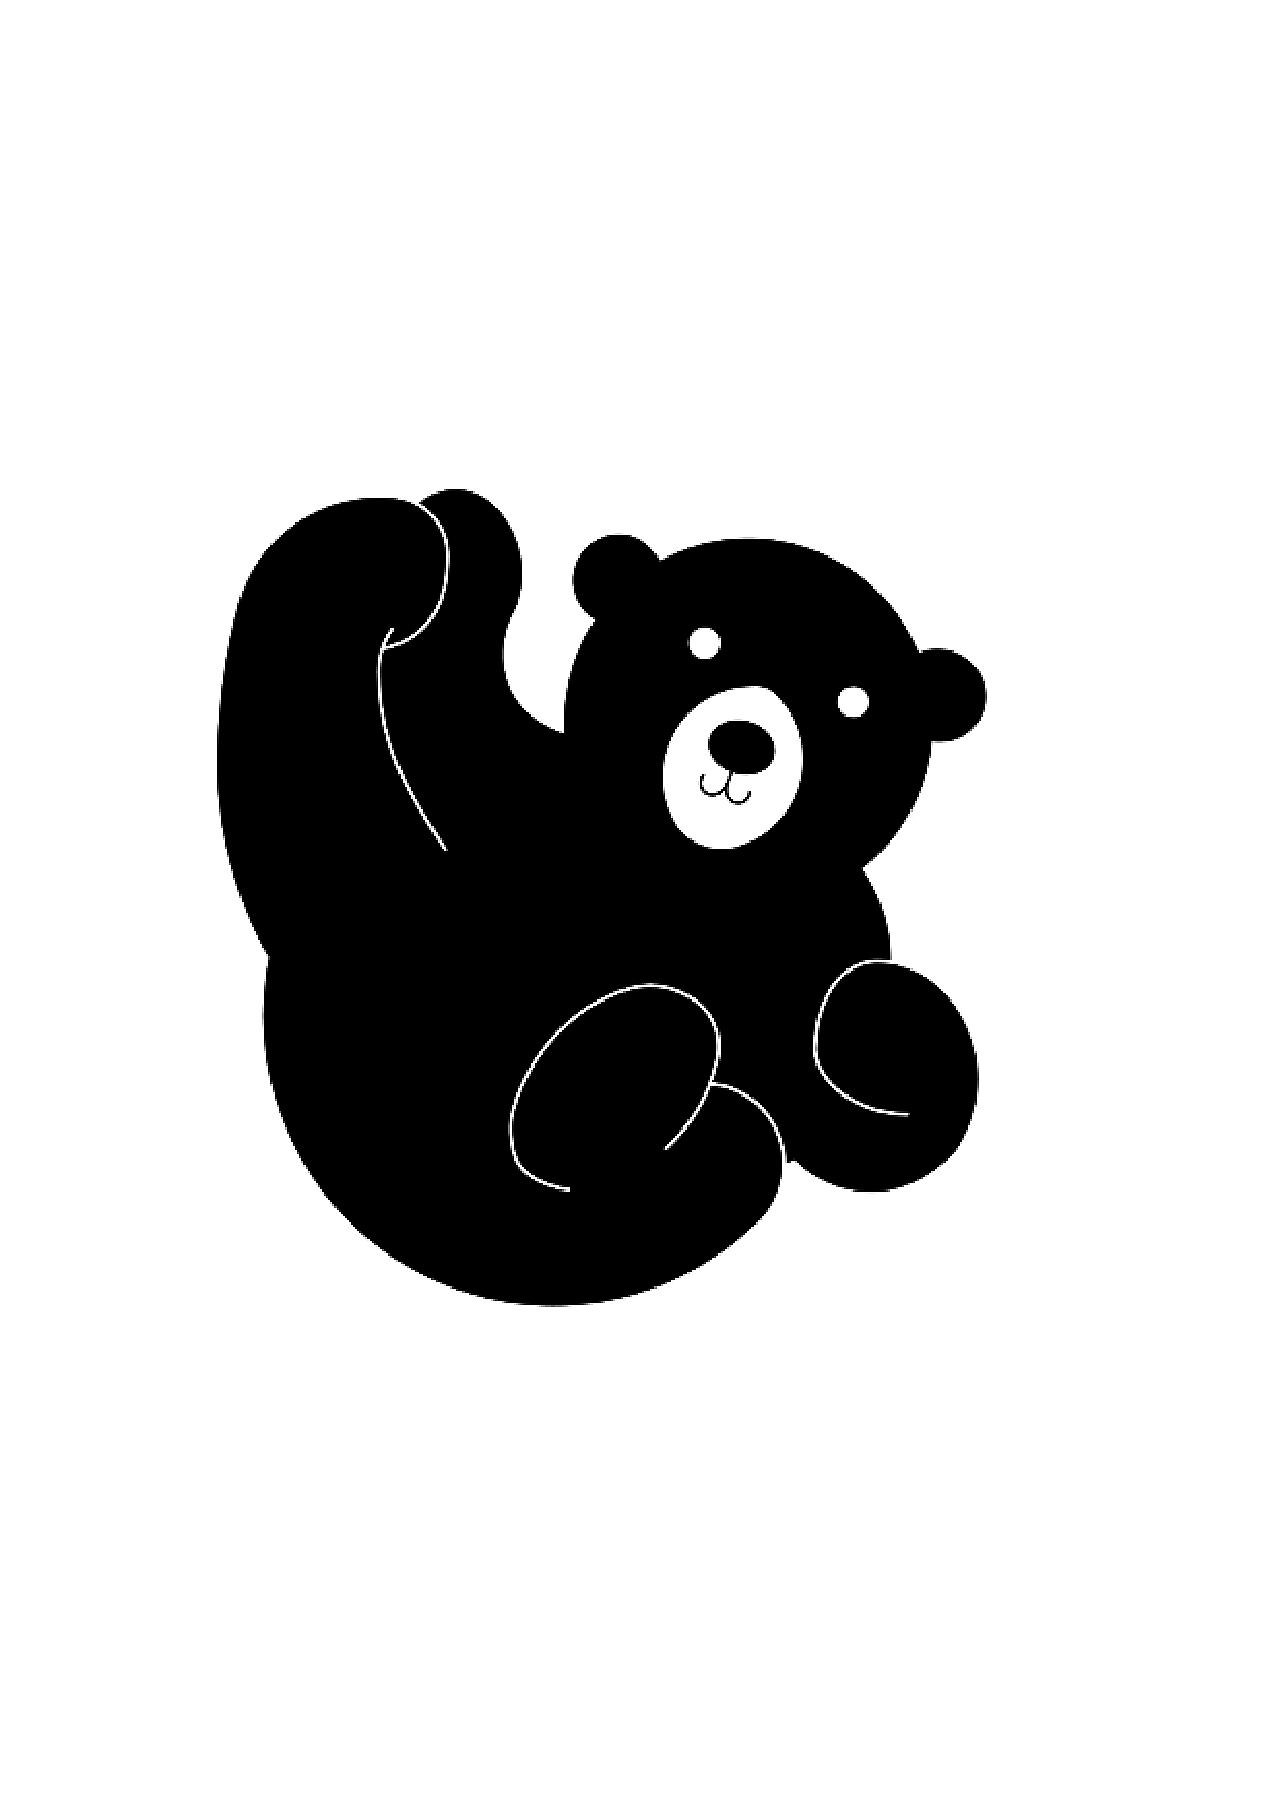 亚洲黑熊动物卡通贴画 向量例证. 插画 包括有 生活, 跳舞, 茴香, 居住, 例证, 形容词, 敲打 - 236504683